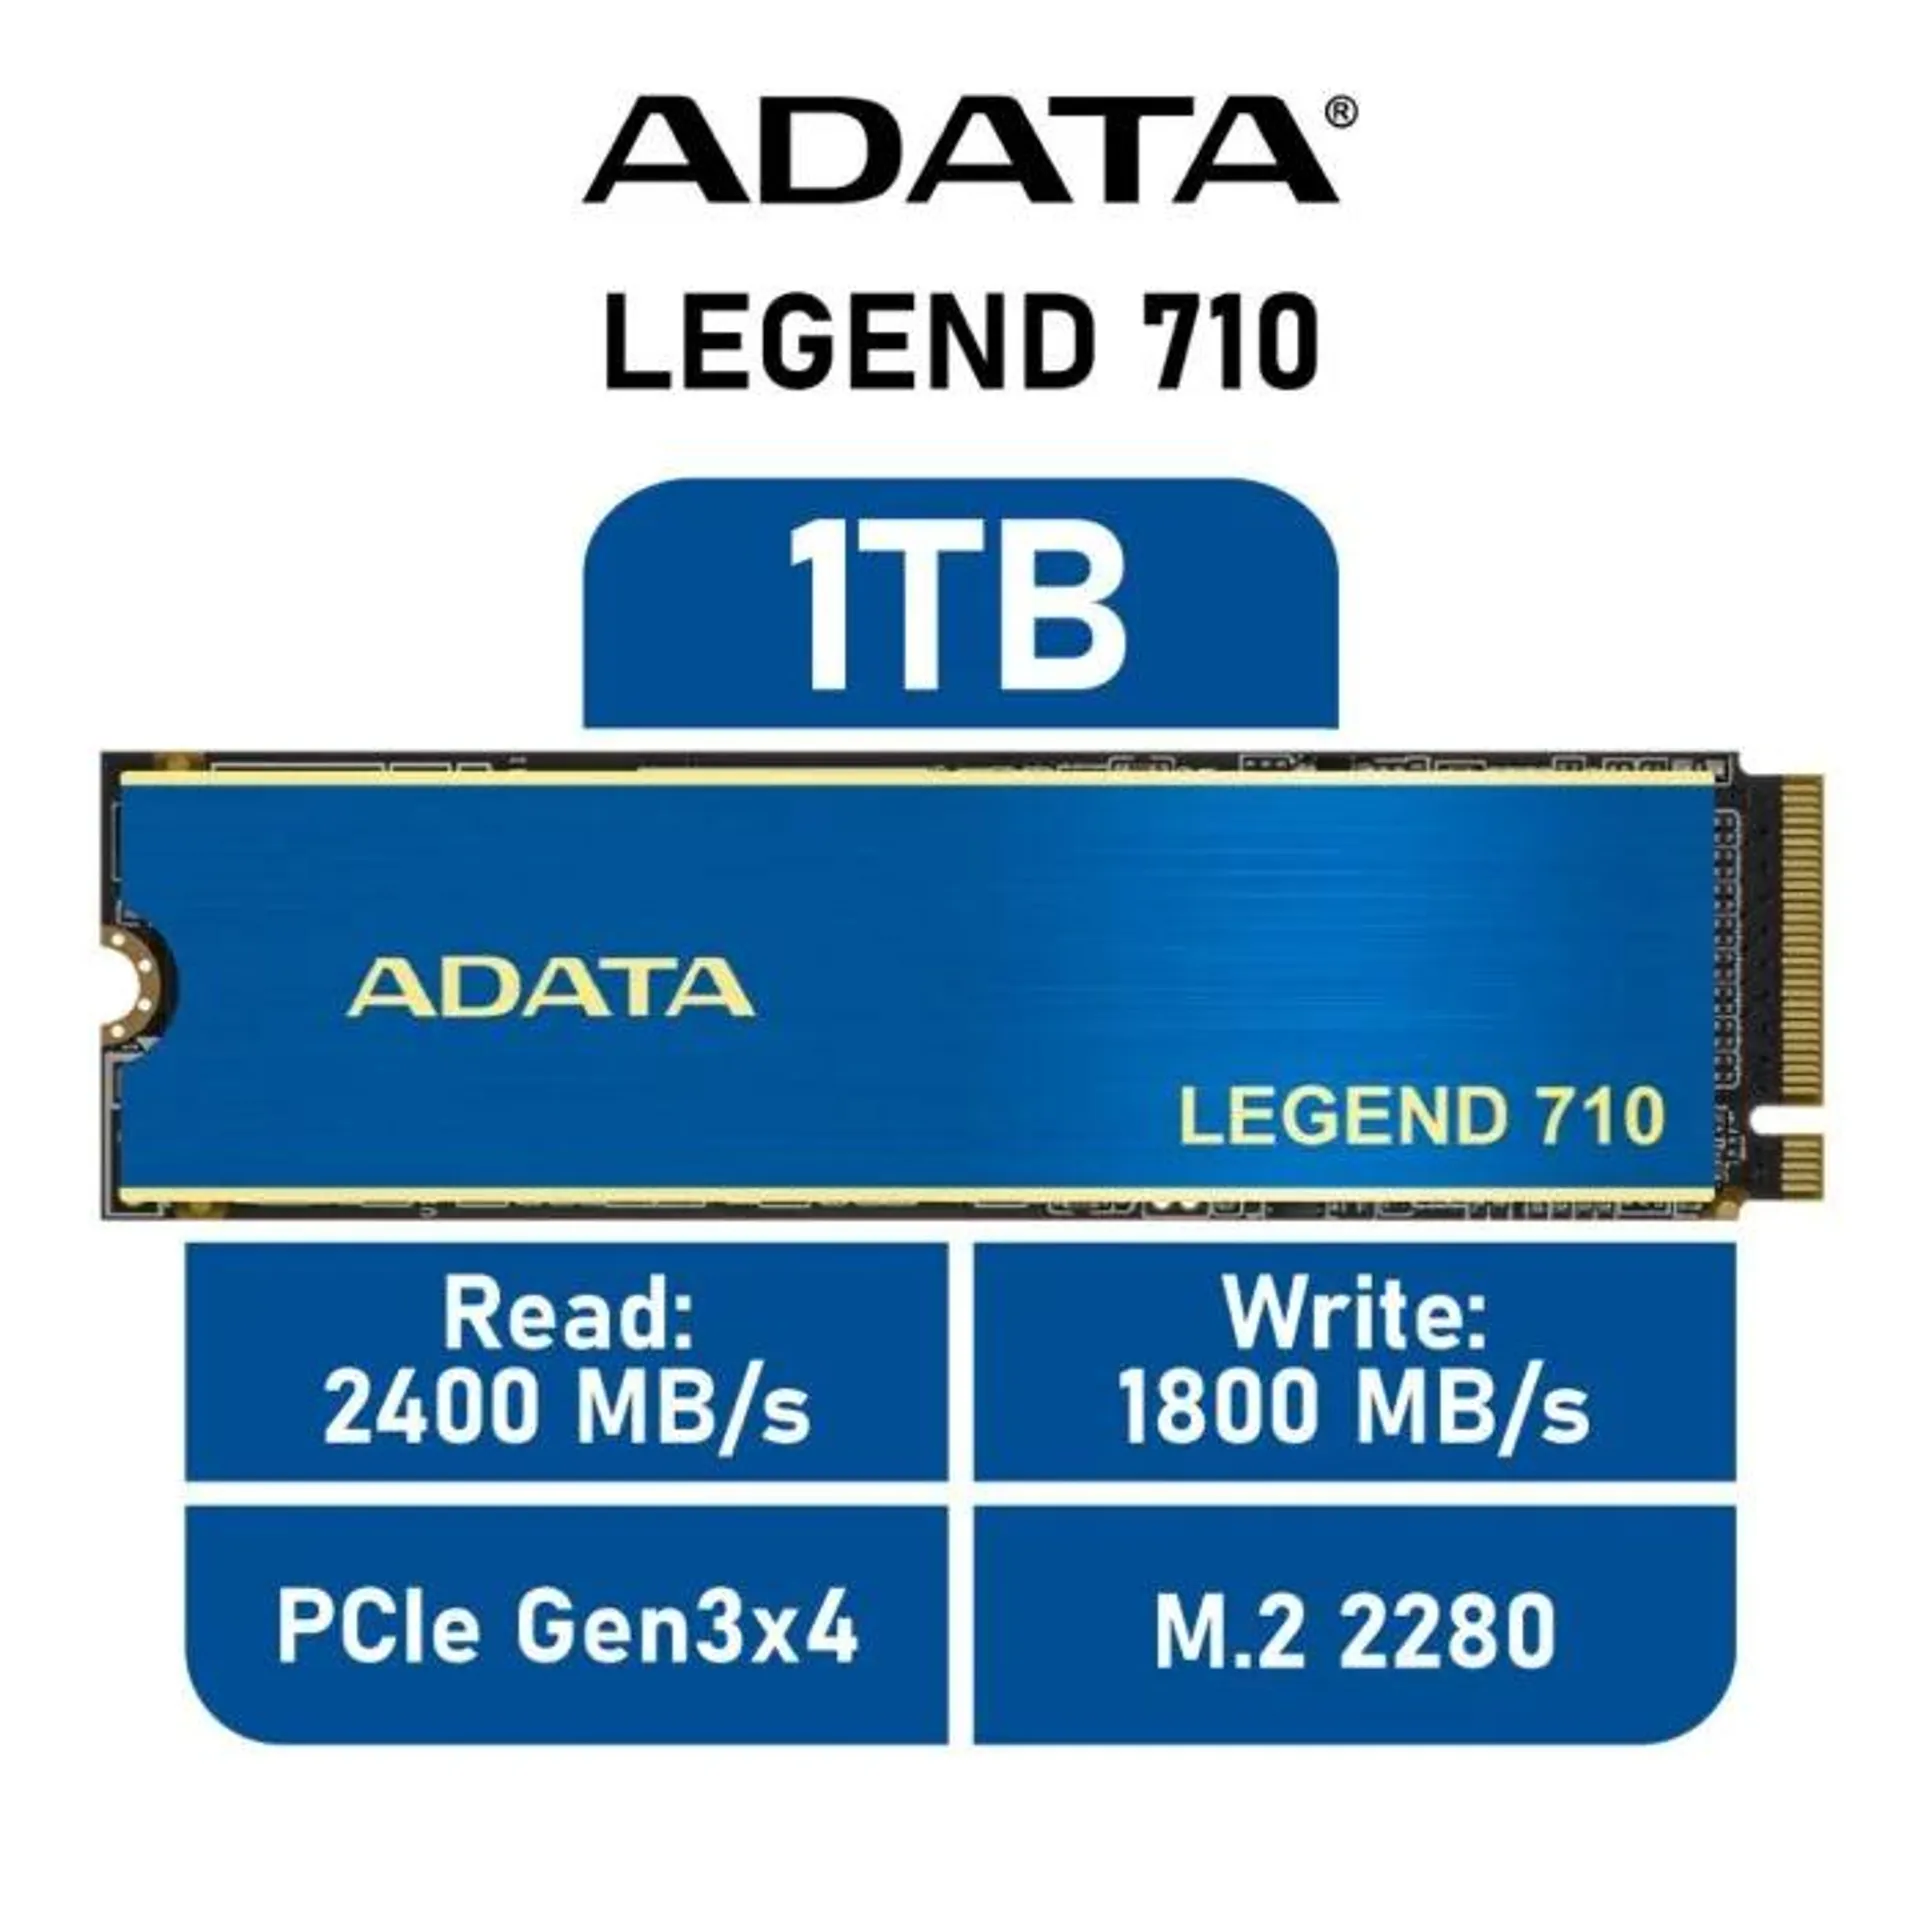 ADATA LEGEND 710 1TB PCIe Gen3x4 ALEG-710-1TCS M.2 2280 Solid State Drive